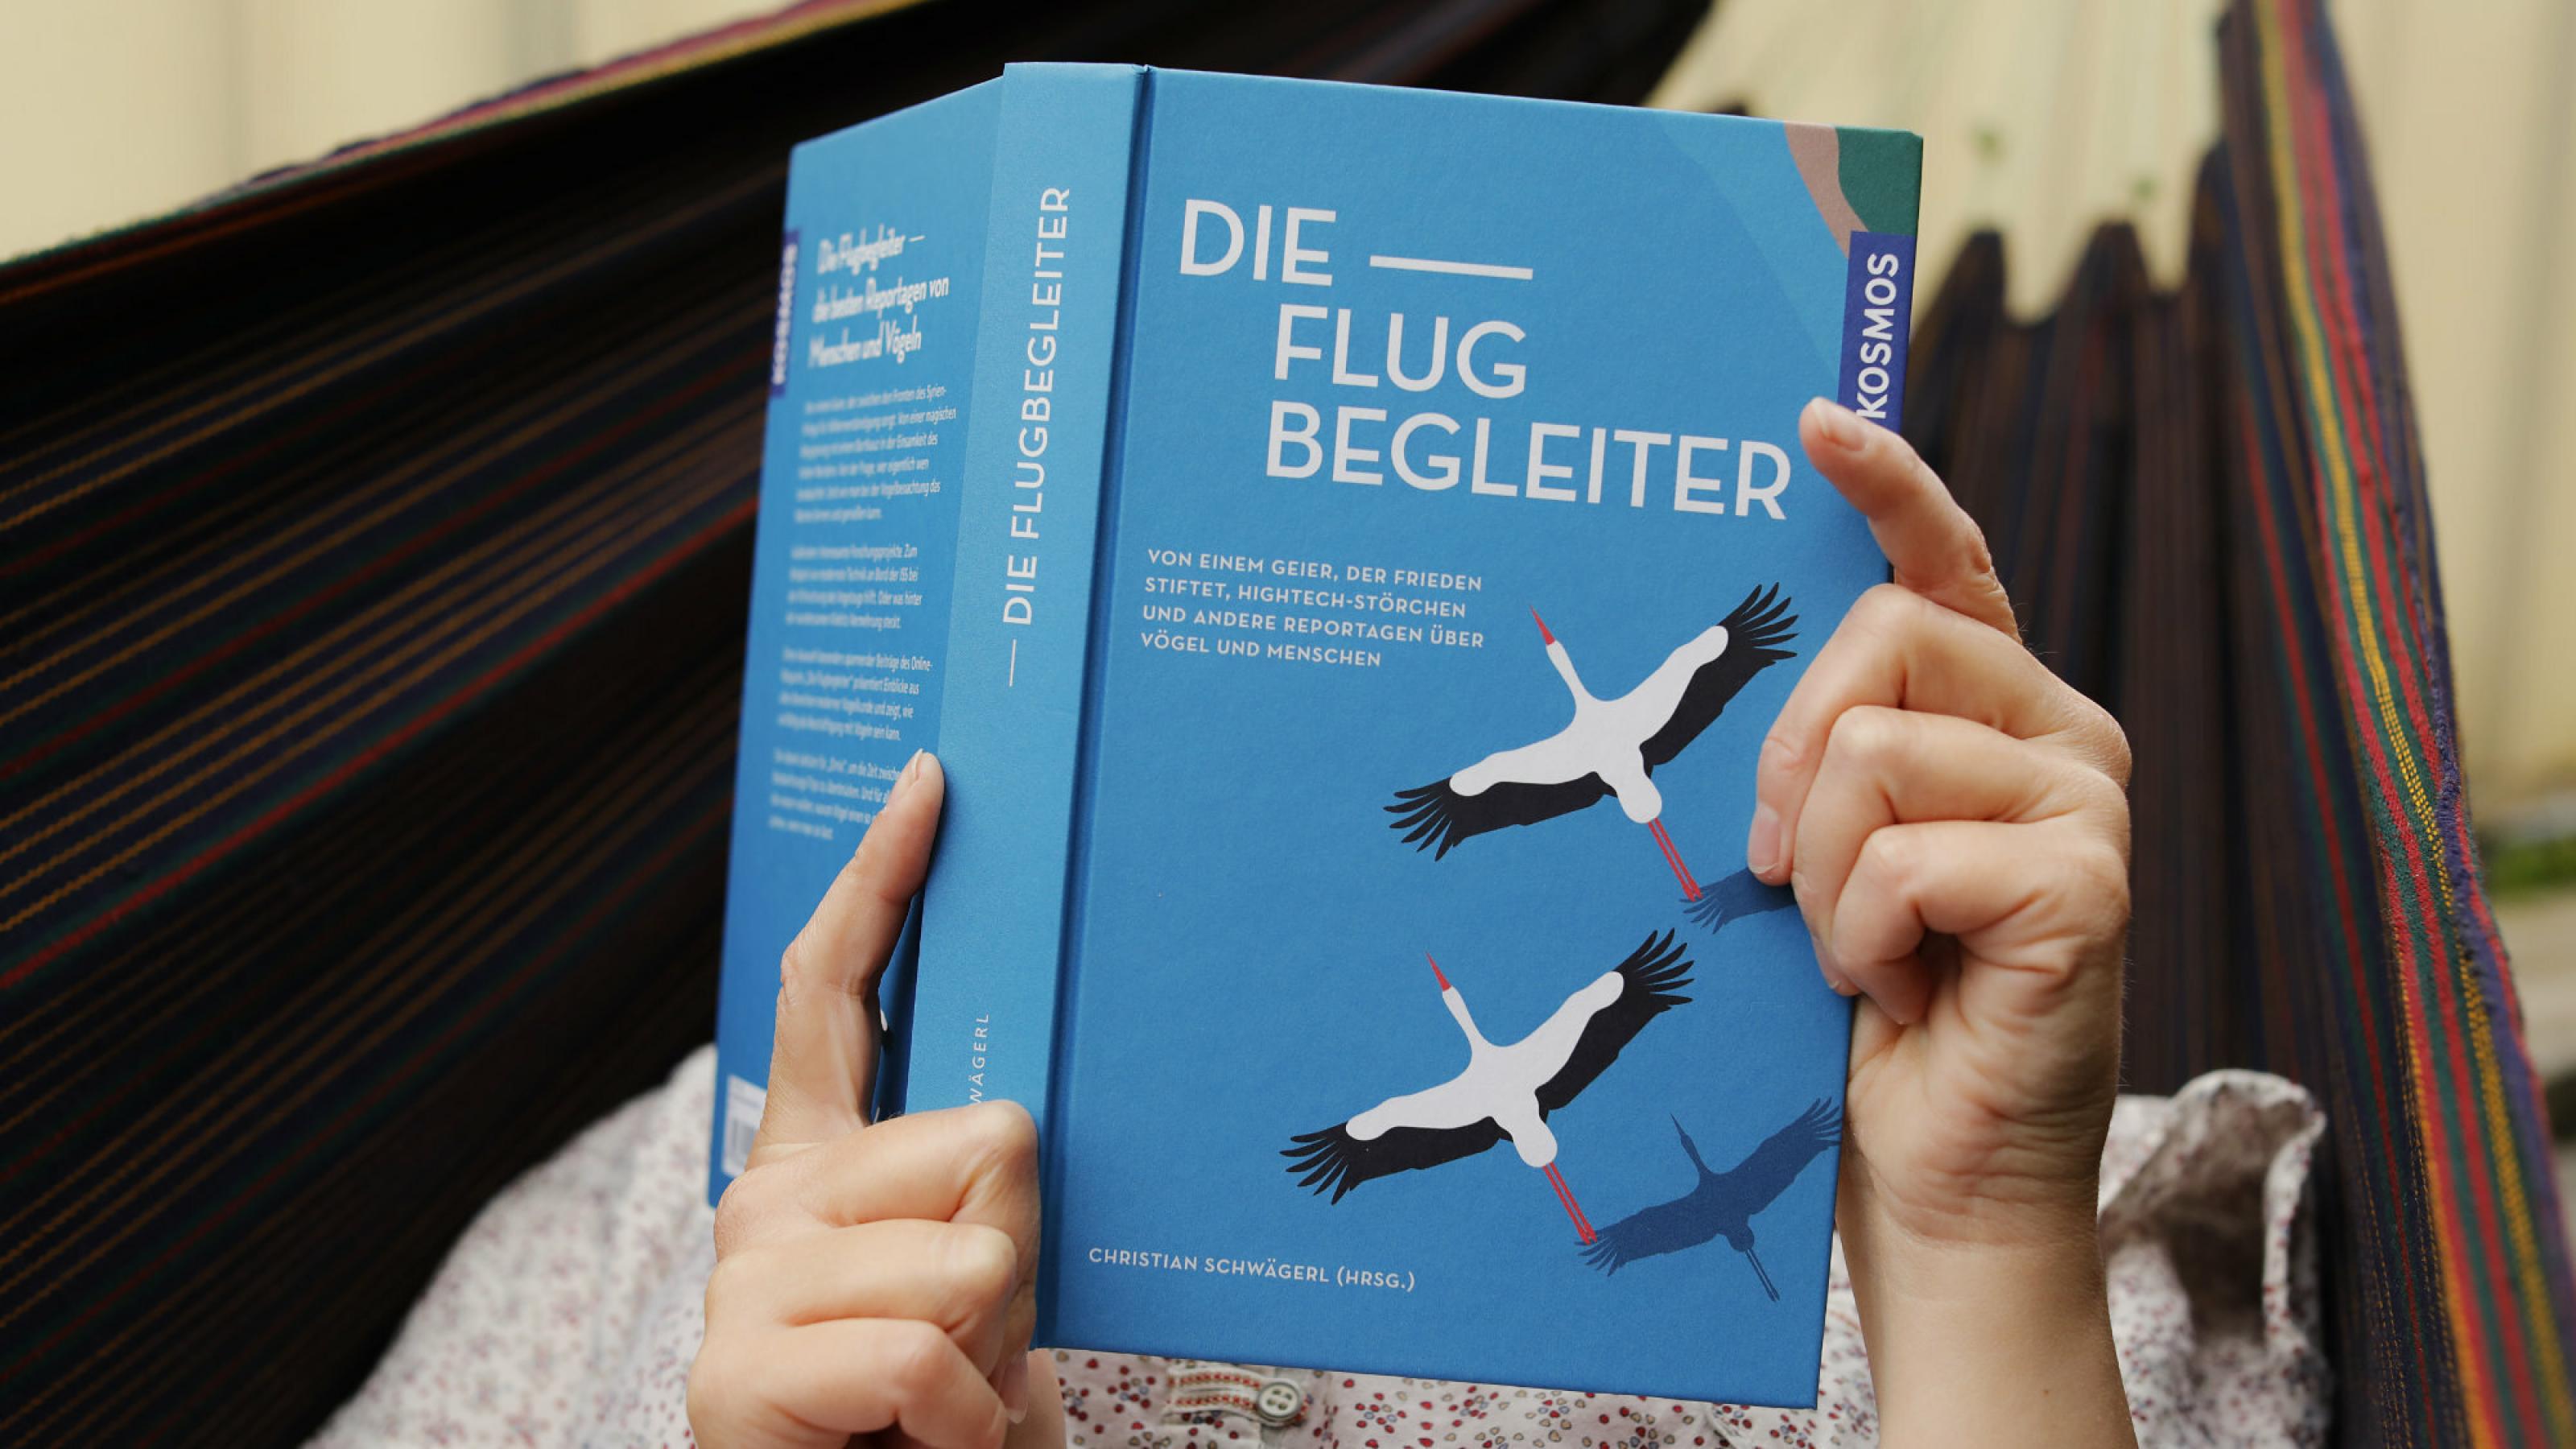 Frau in Hängematte hält das Buch „Die Flugbegleiter“ in den Händen.